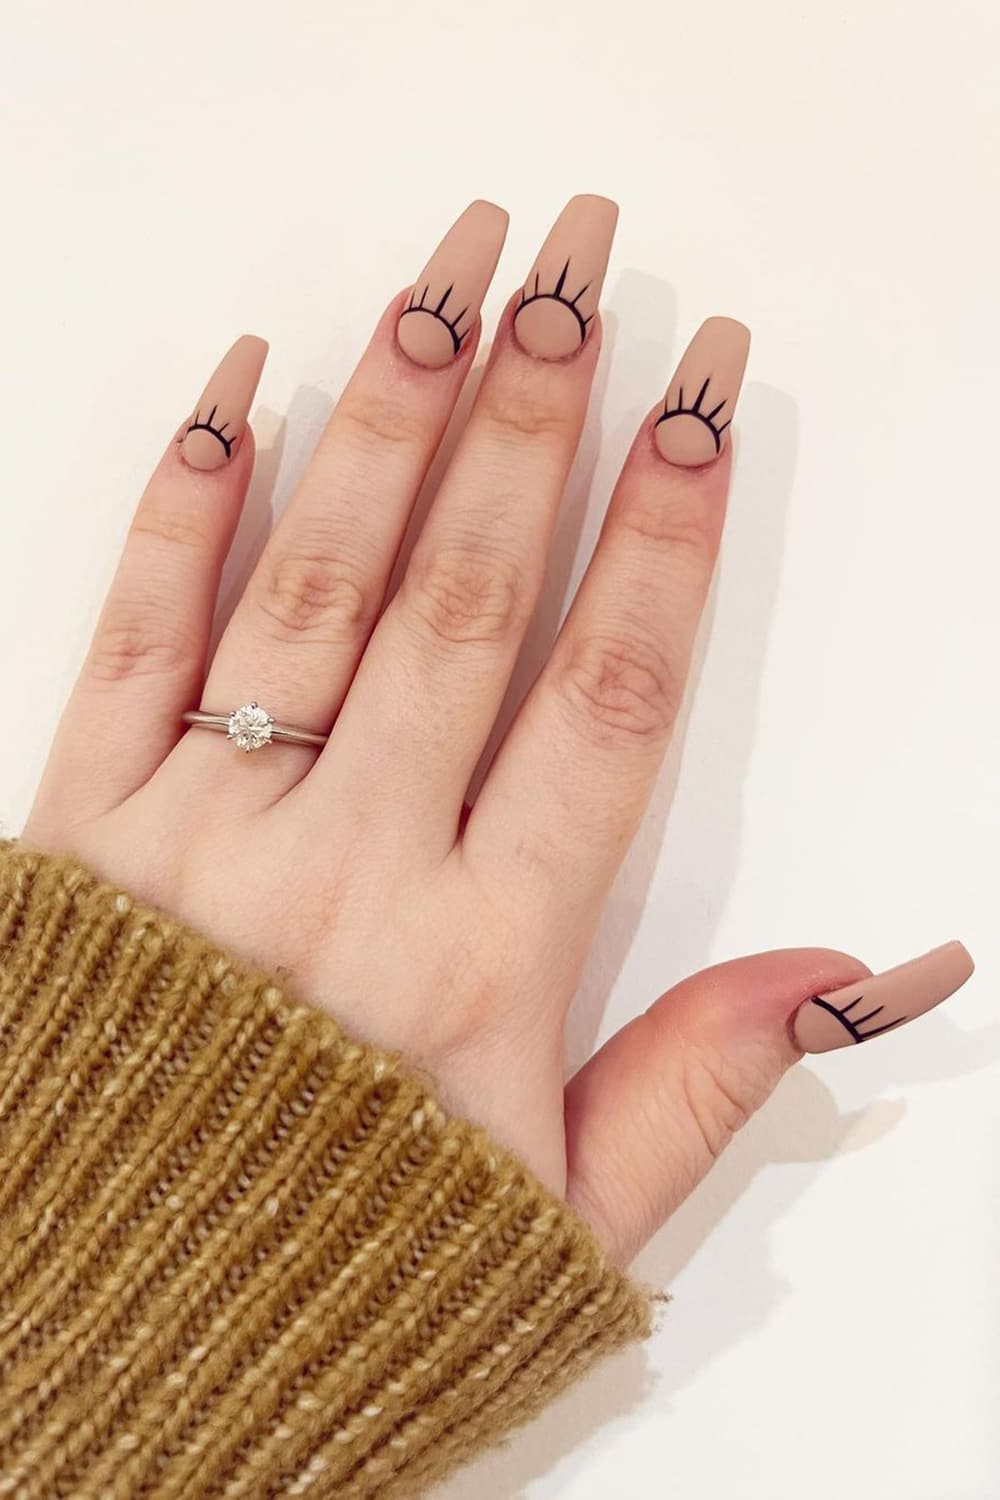 Minimalist sun brown nails